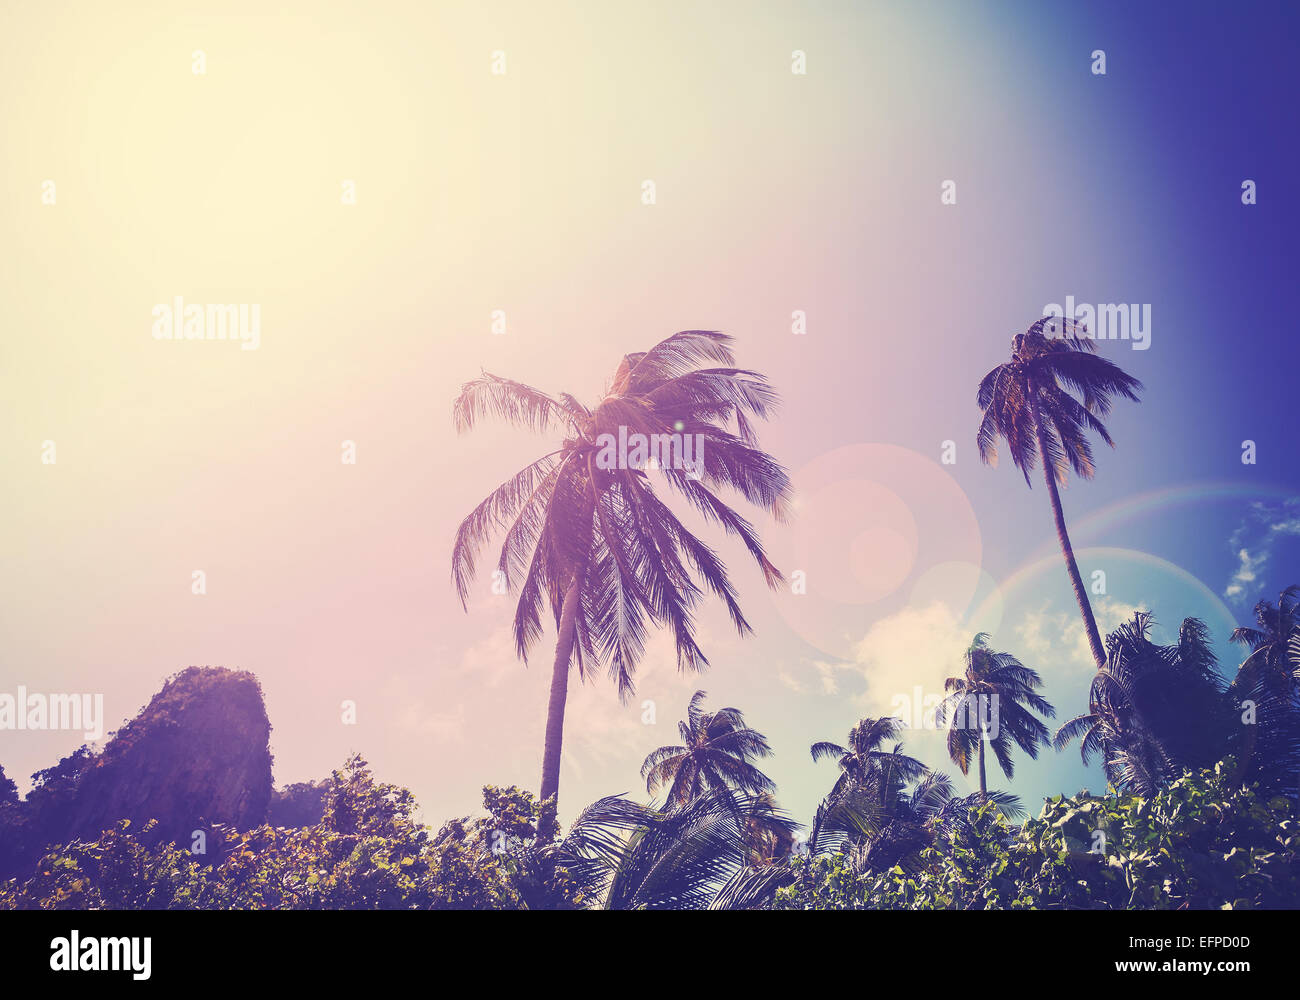 Vintage gefilterte Bild verblasst Palmen mit Flare-Effekt. Stockfoto